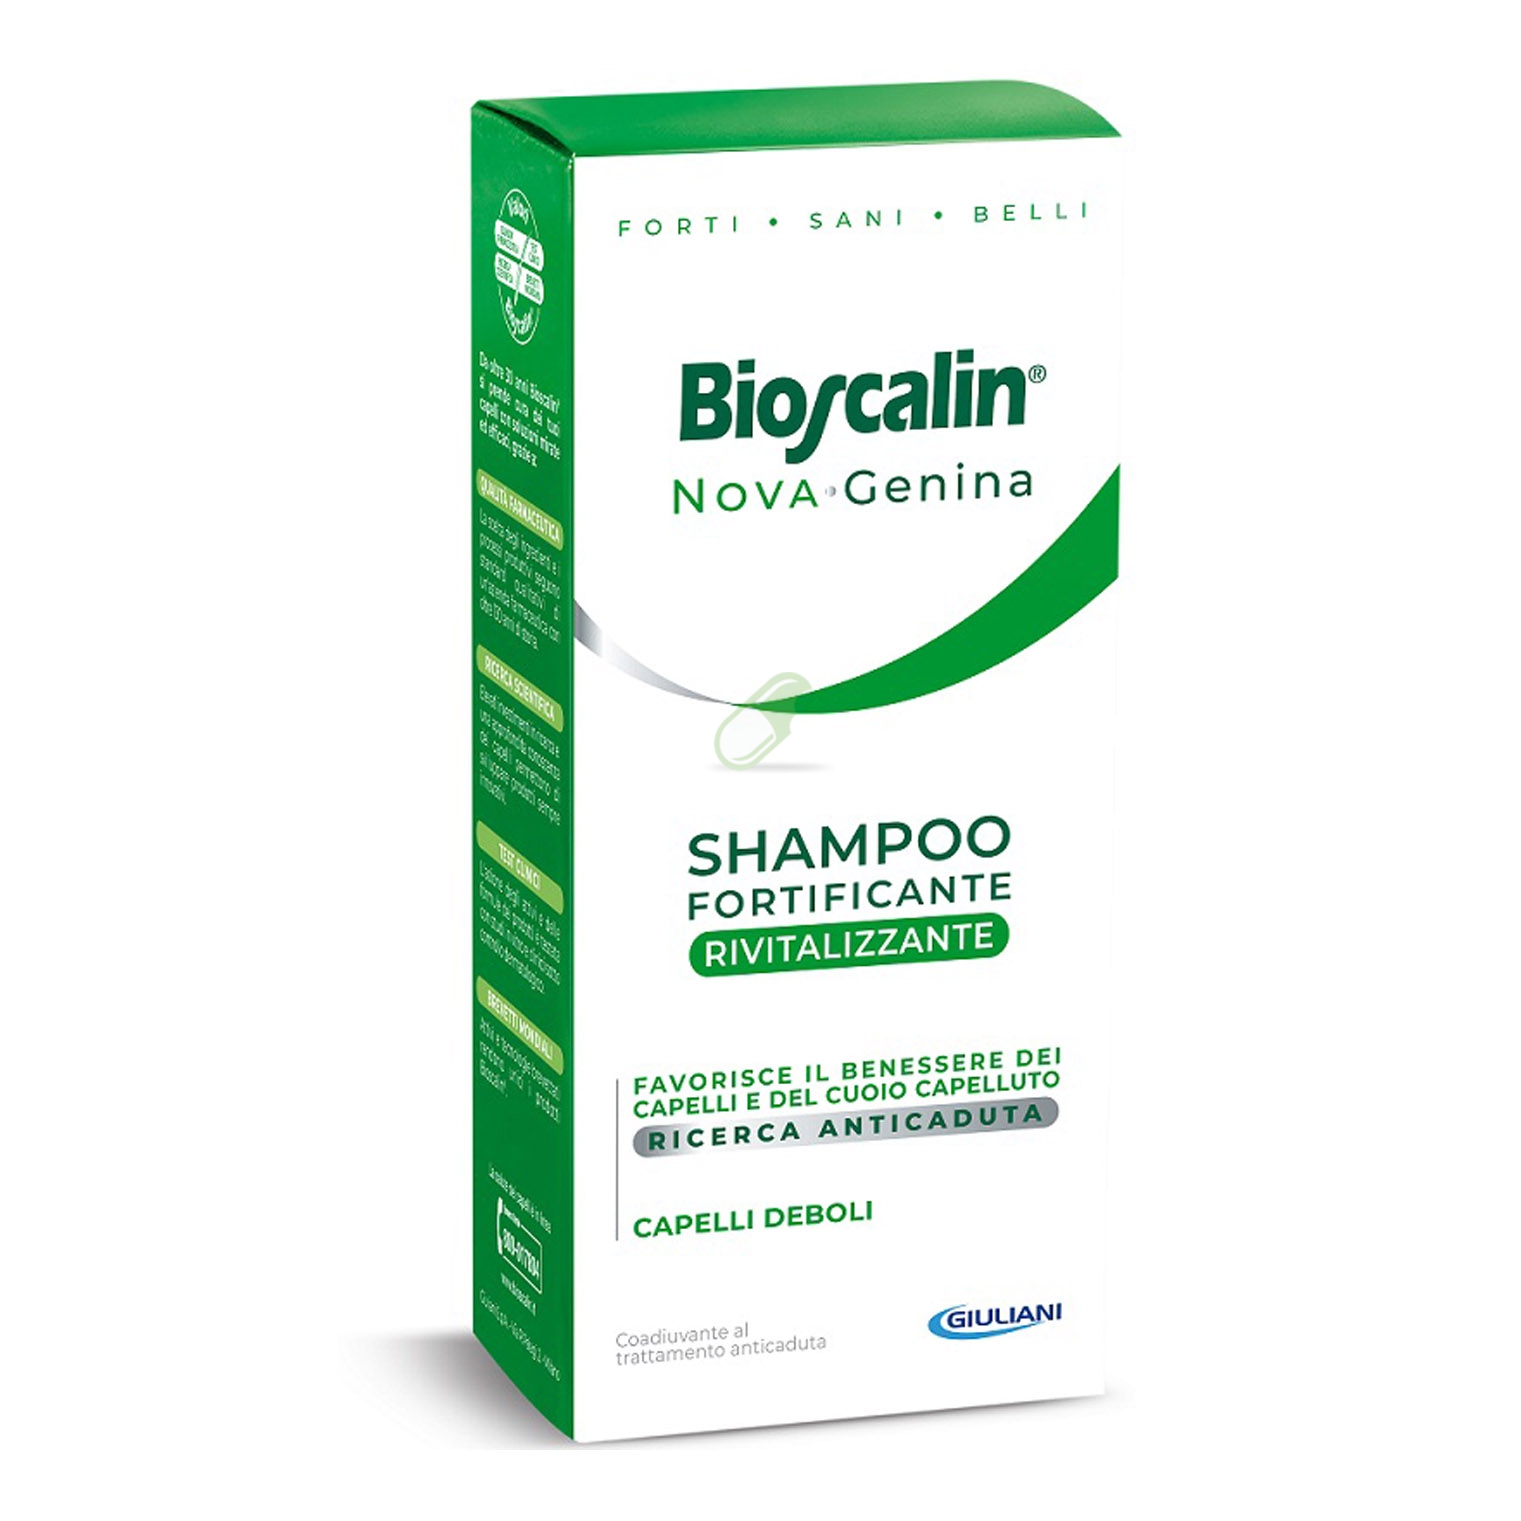 Bioscalin Novagenina Shampoo Fortificante Rivitalizzante 400 ml